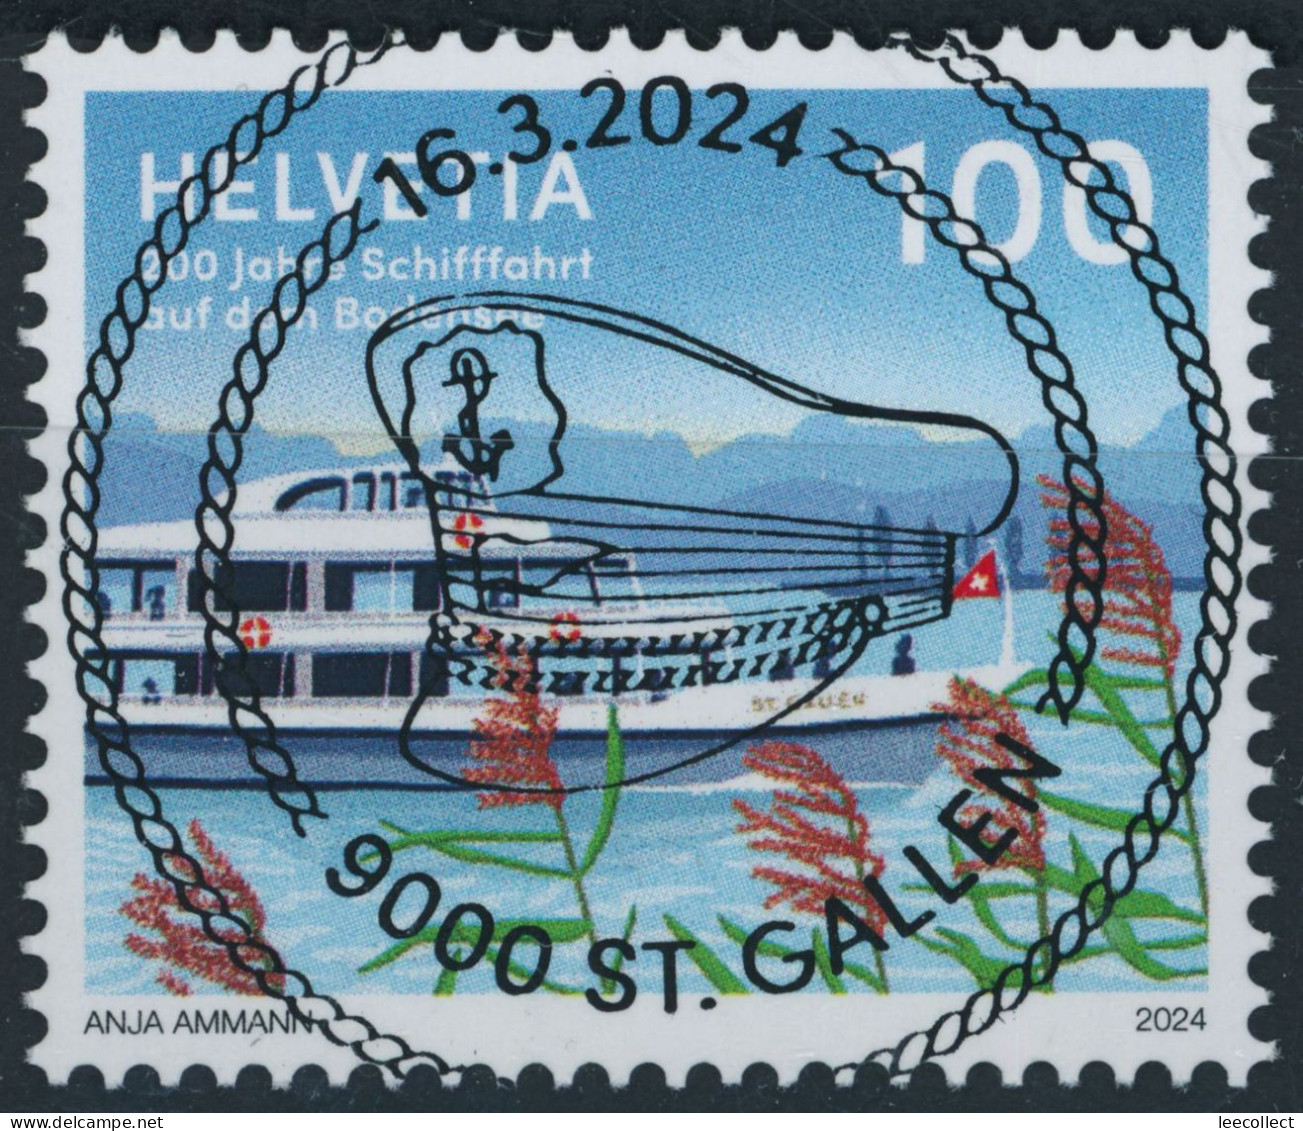 Suisse - 2024 - Schifffahrt Bodensee - Sonderstempel • Voll - Used Stamps